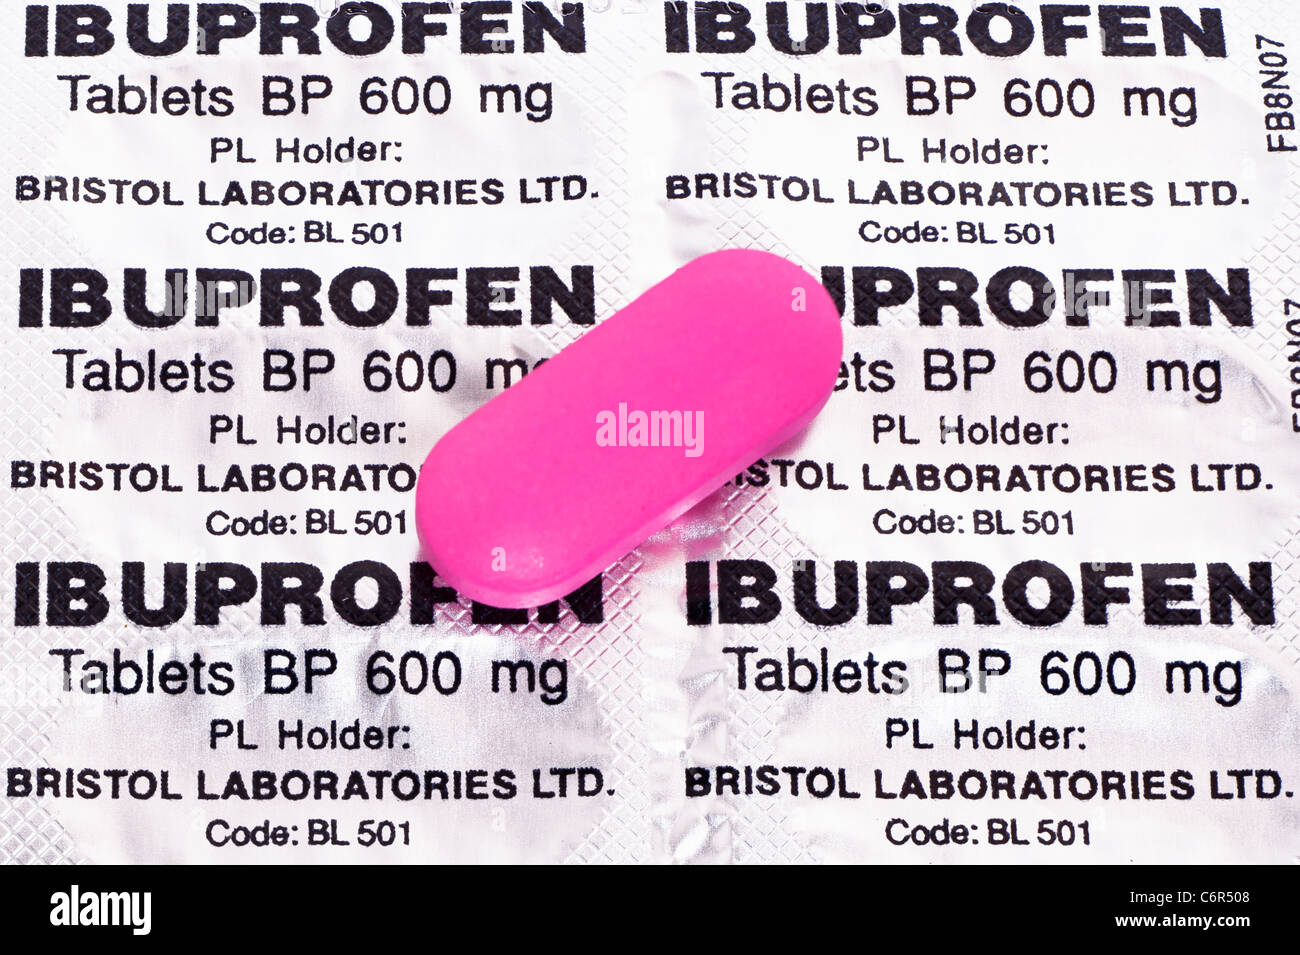 Ibuprofene 600 mg immagini e fotografie stock ad alta risoluzione - Alamy